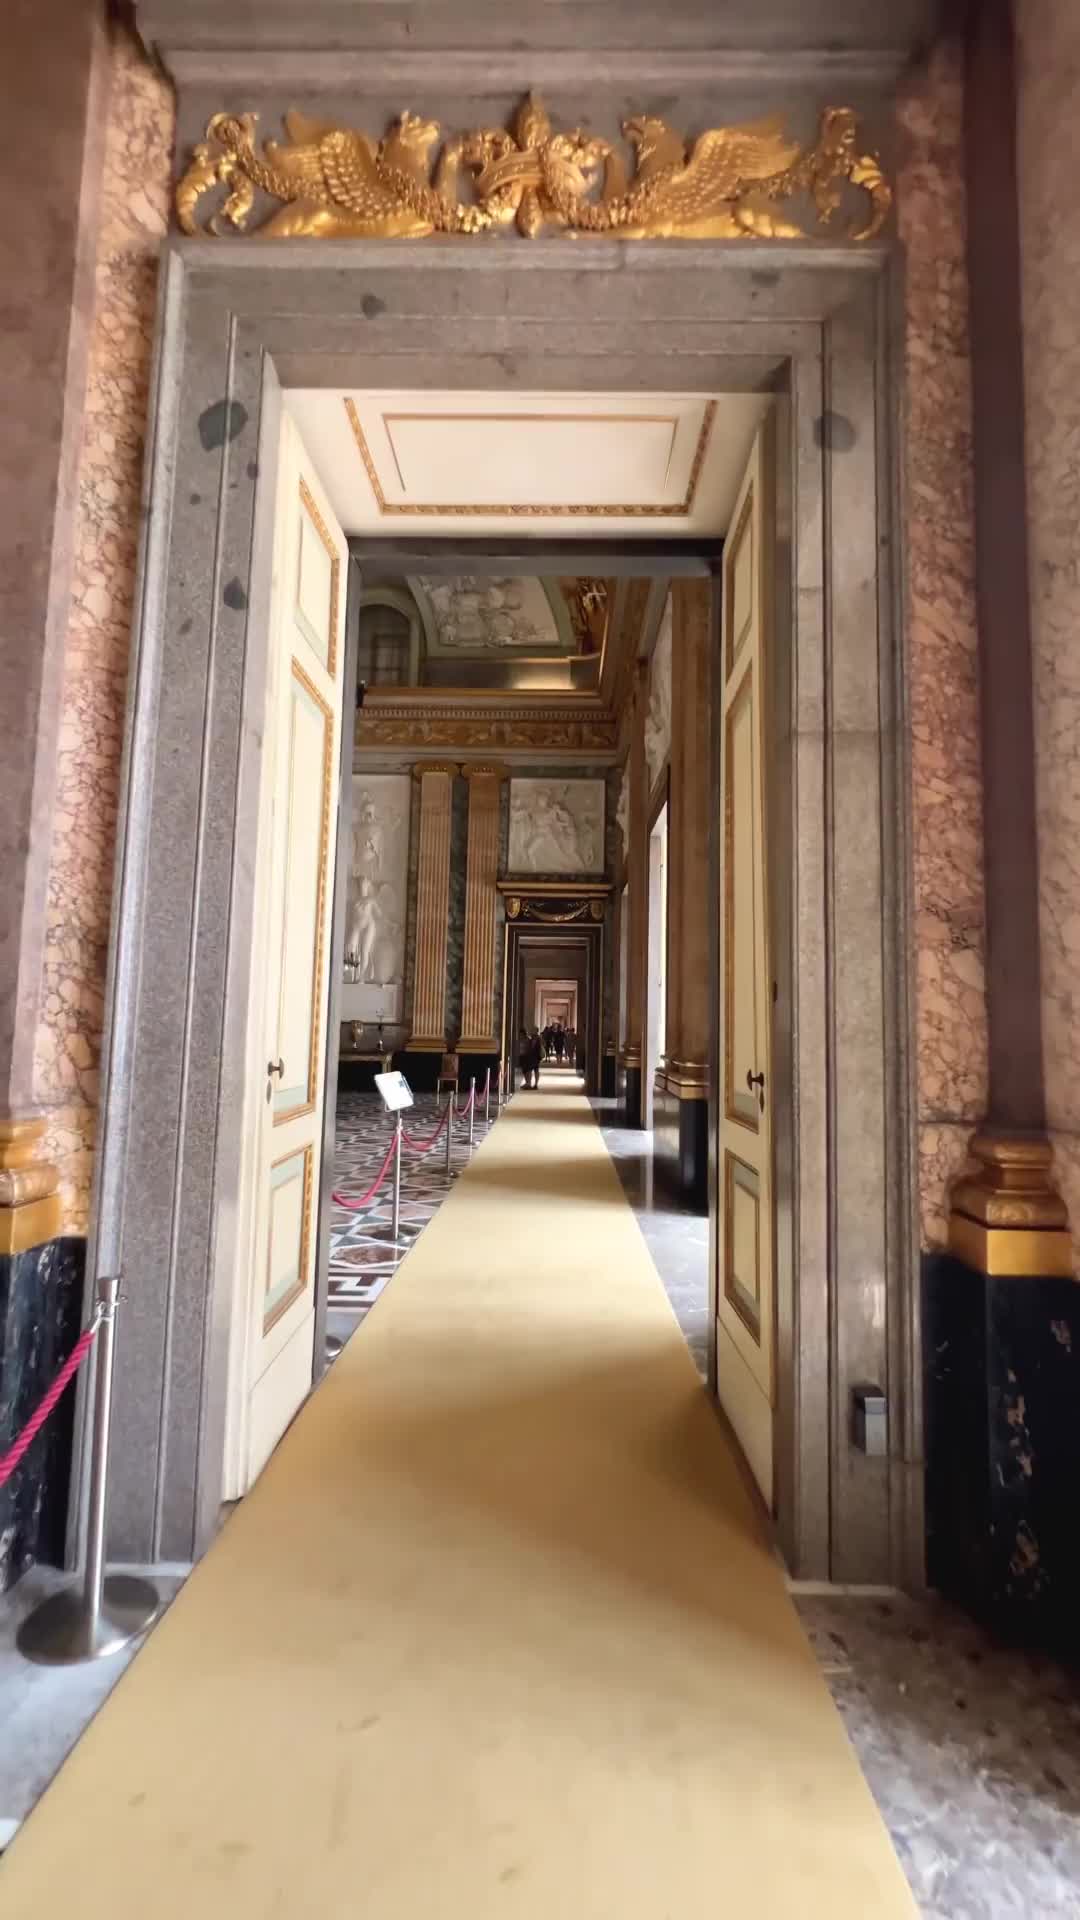 The Majestic Sala di Marte at Reggia di Caserta